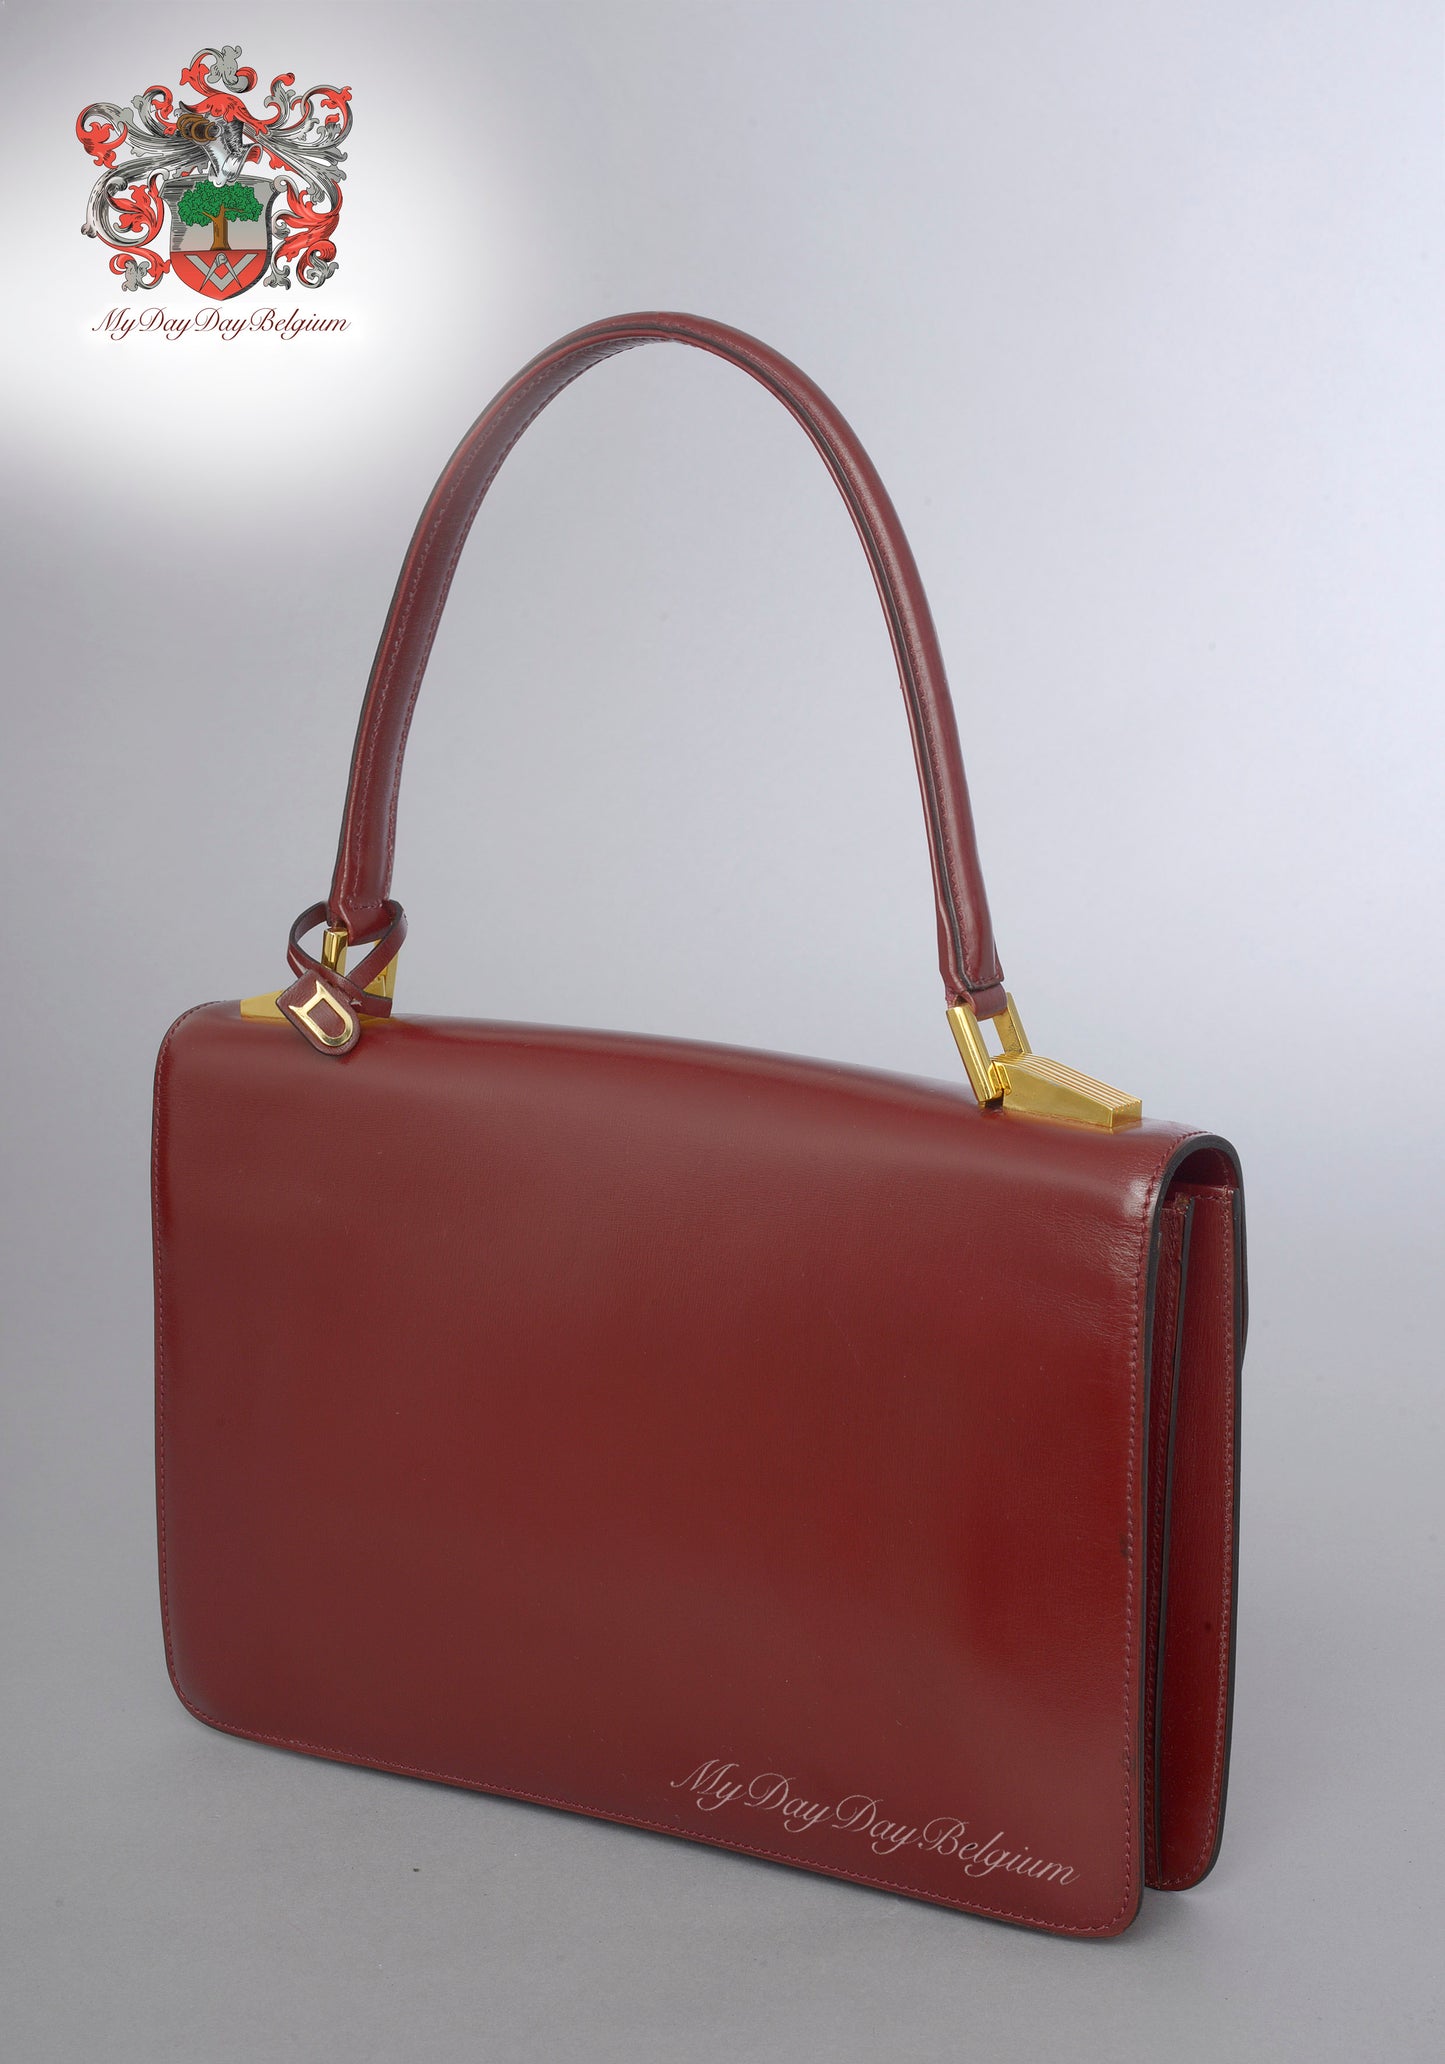 Delvaux vintage top handle handbag 1980